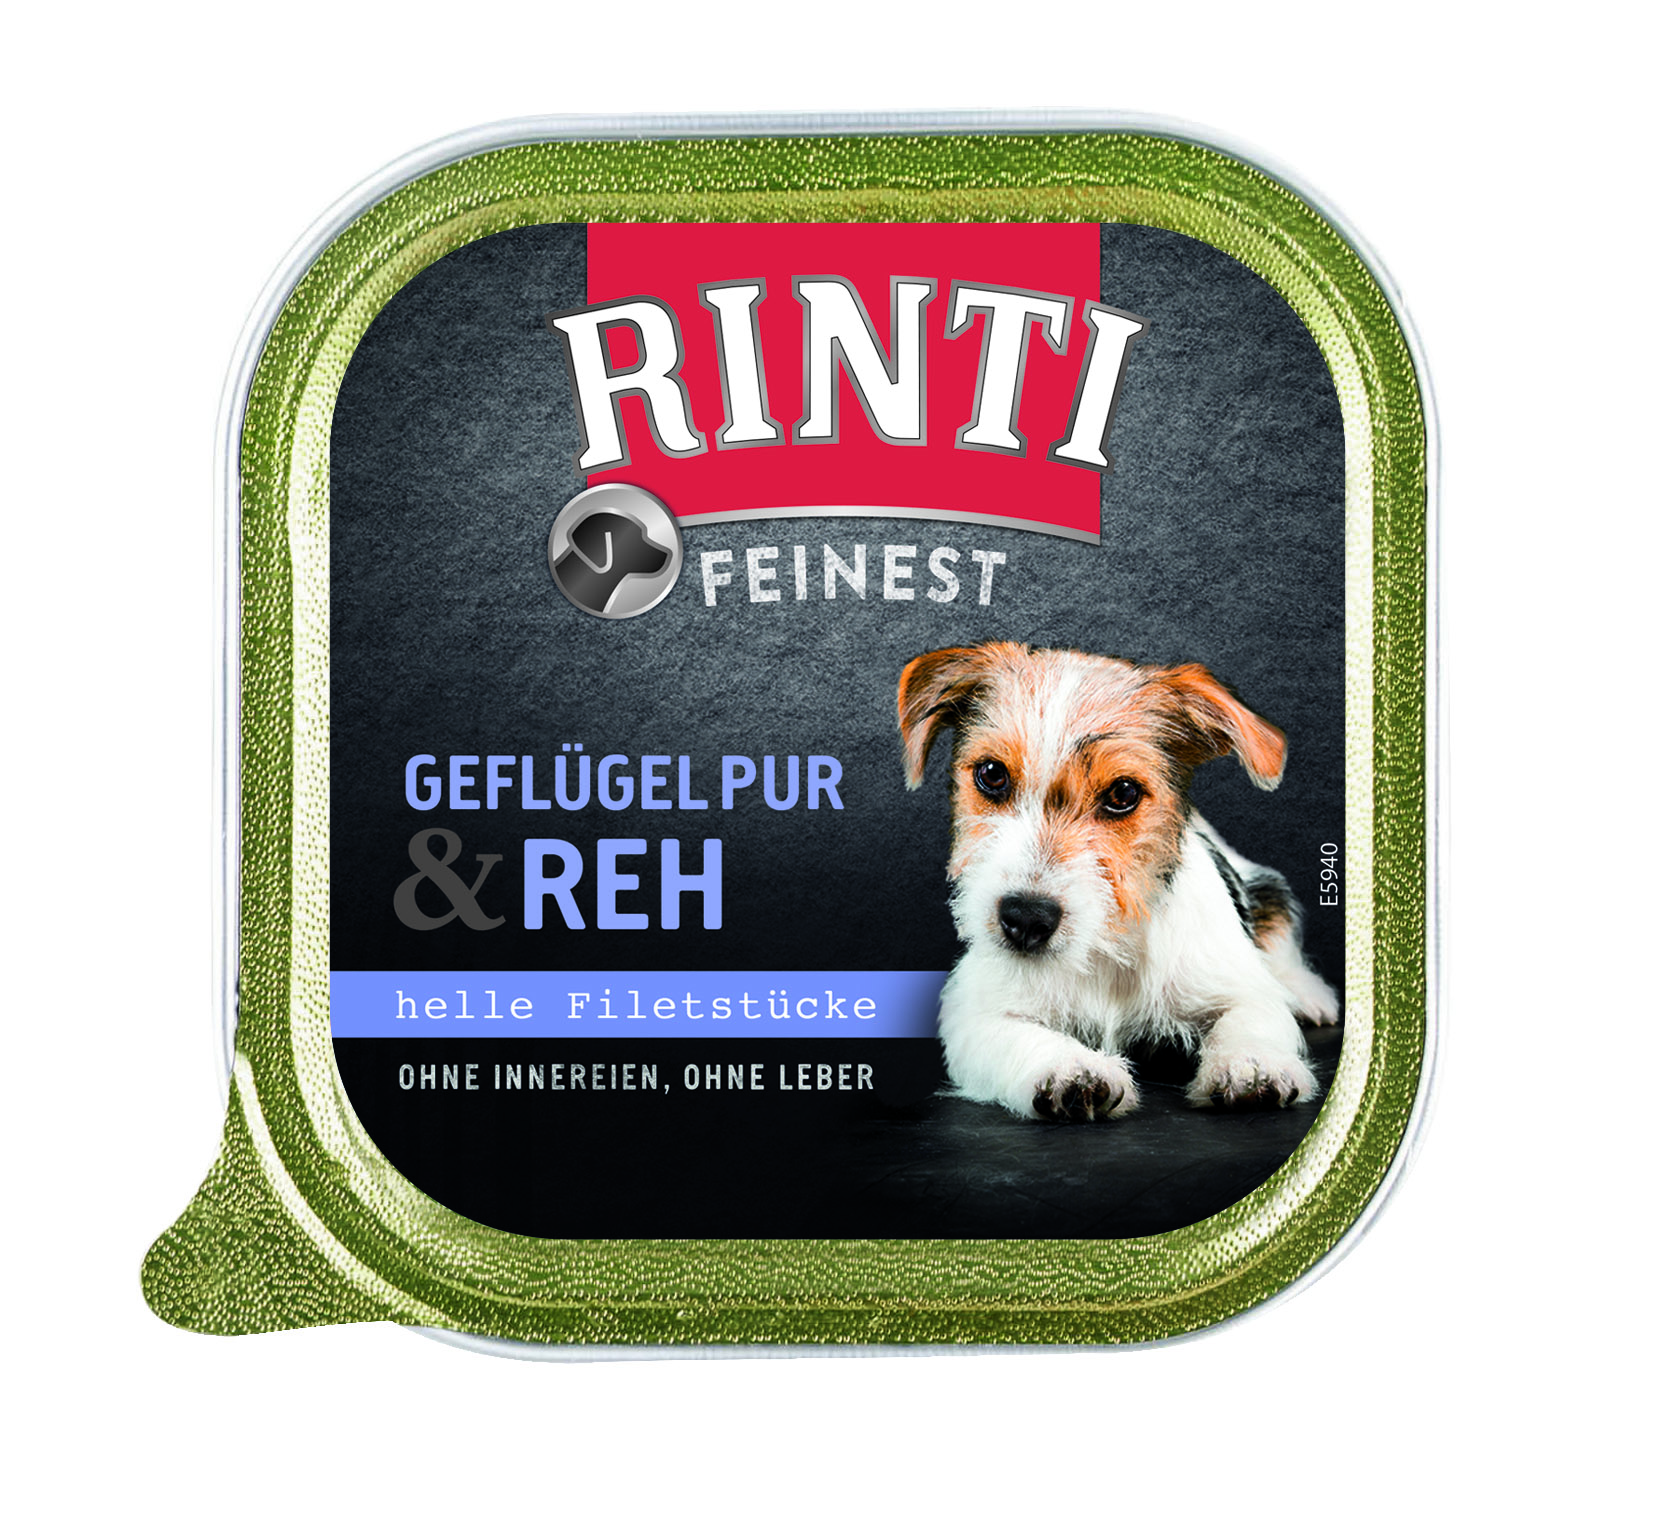 Rinti Feinest - Geflügel pur und Reh